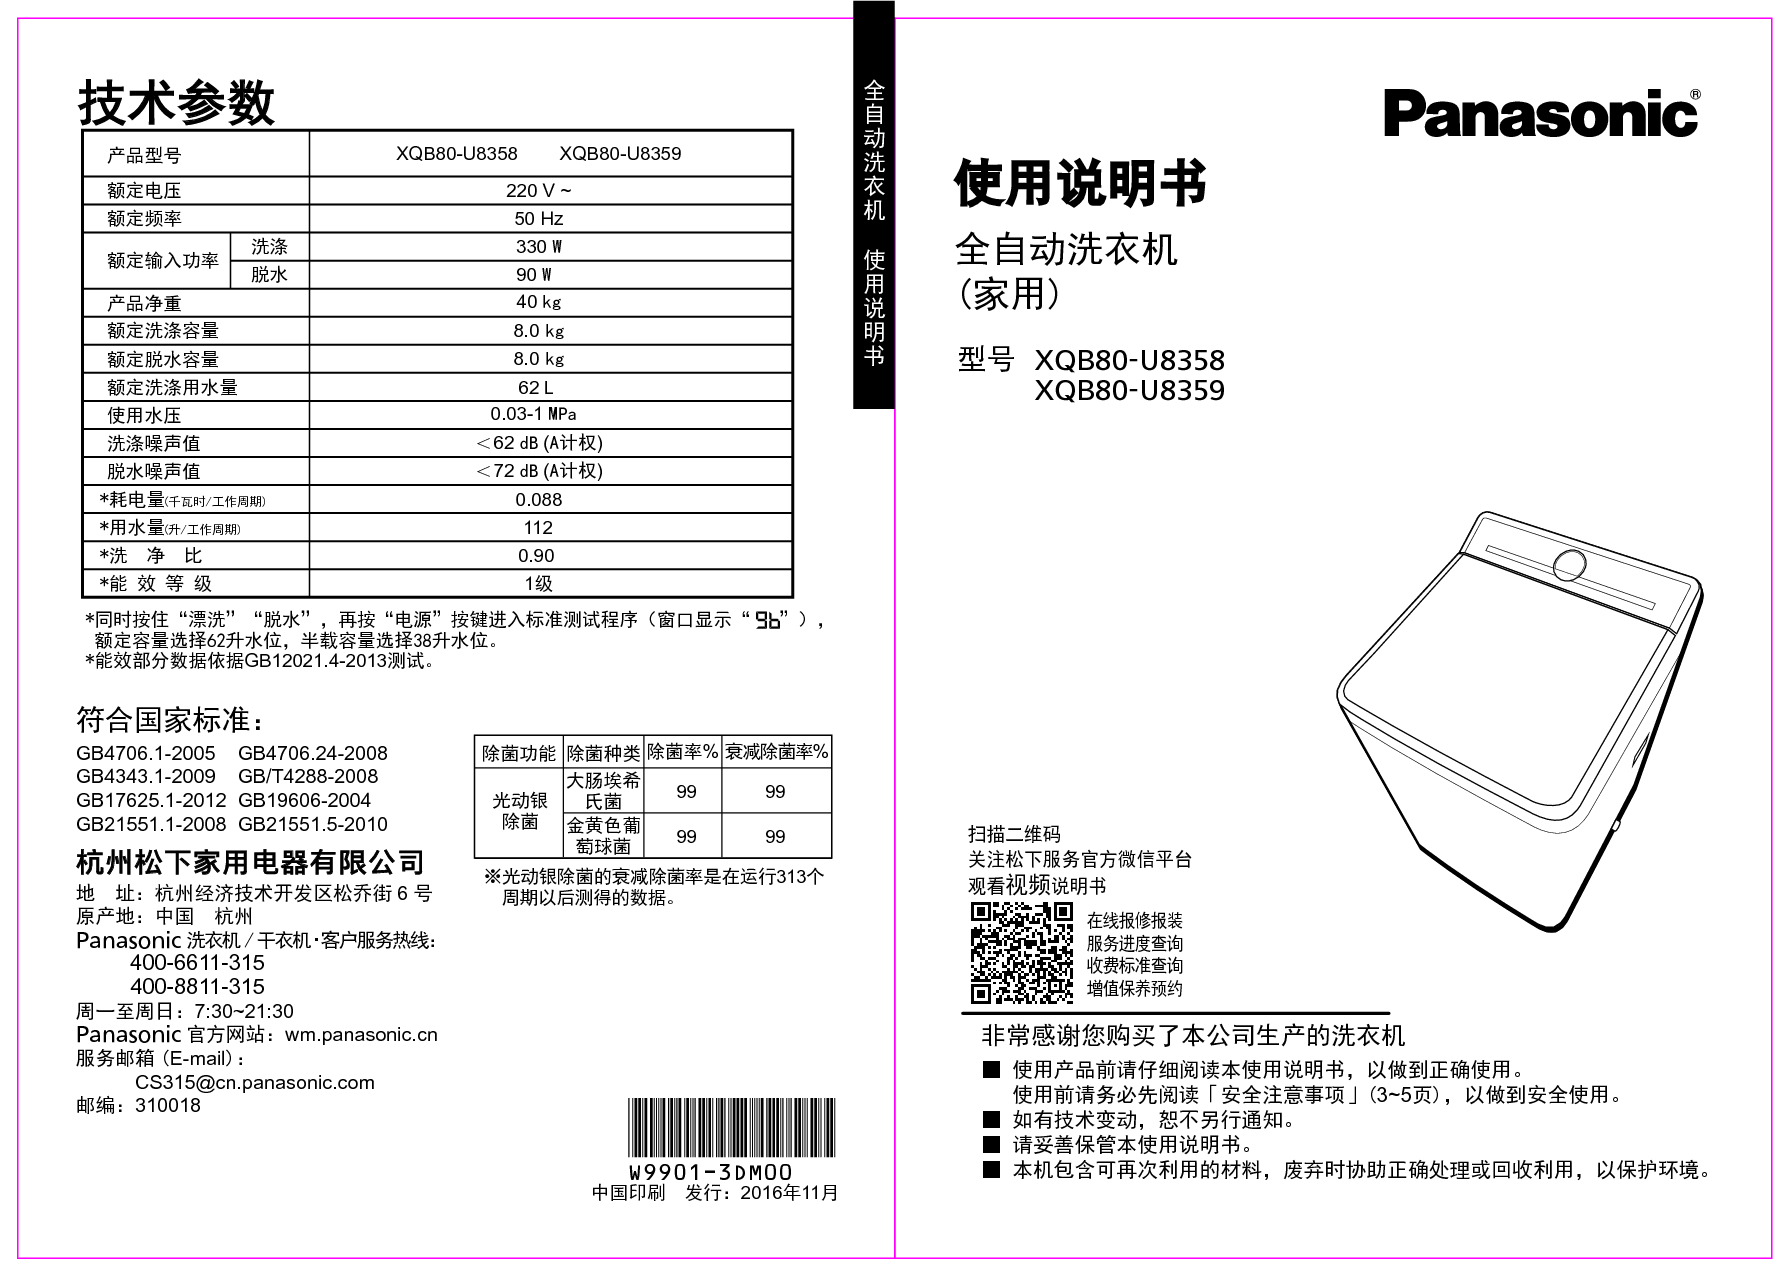 松下 Panasonic XQB80-U8358 使用说明书 封面